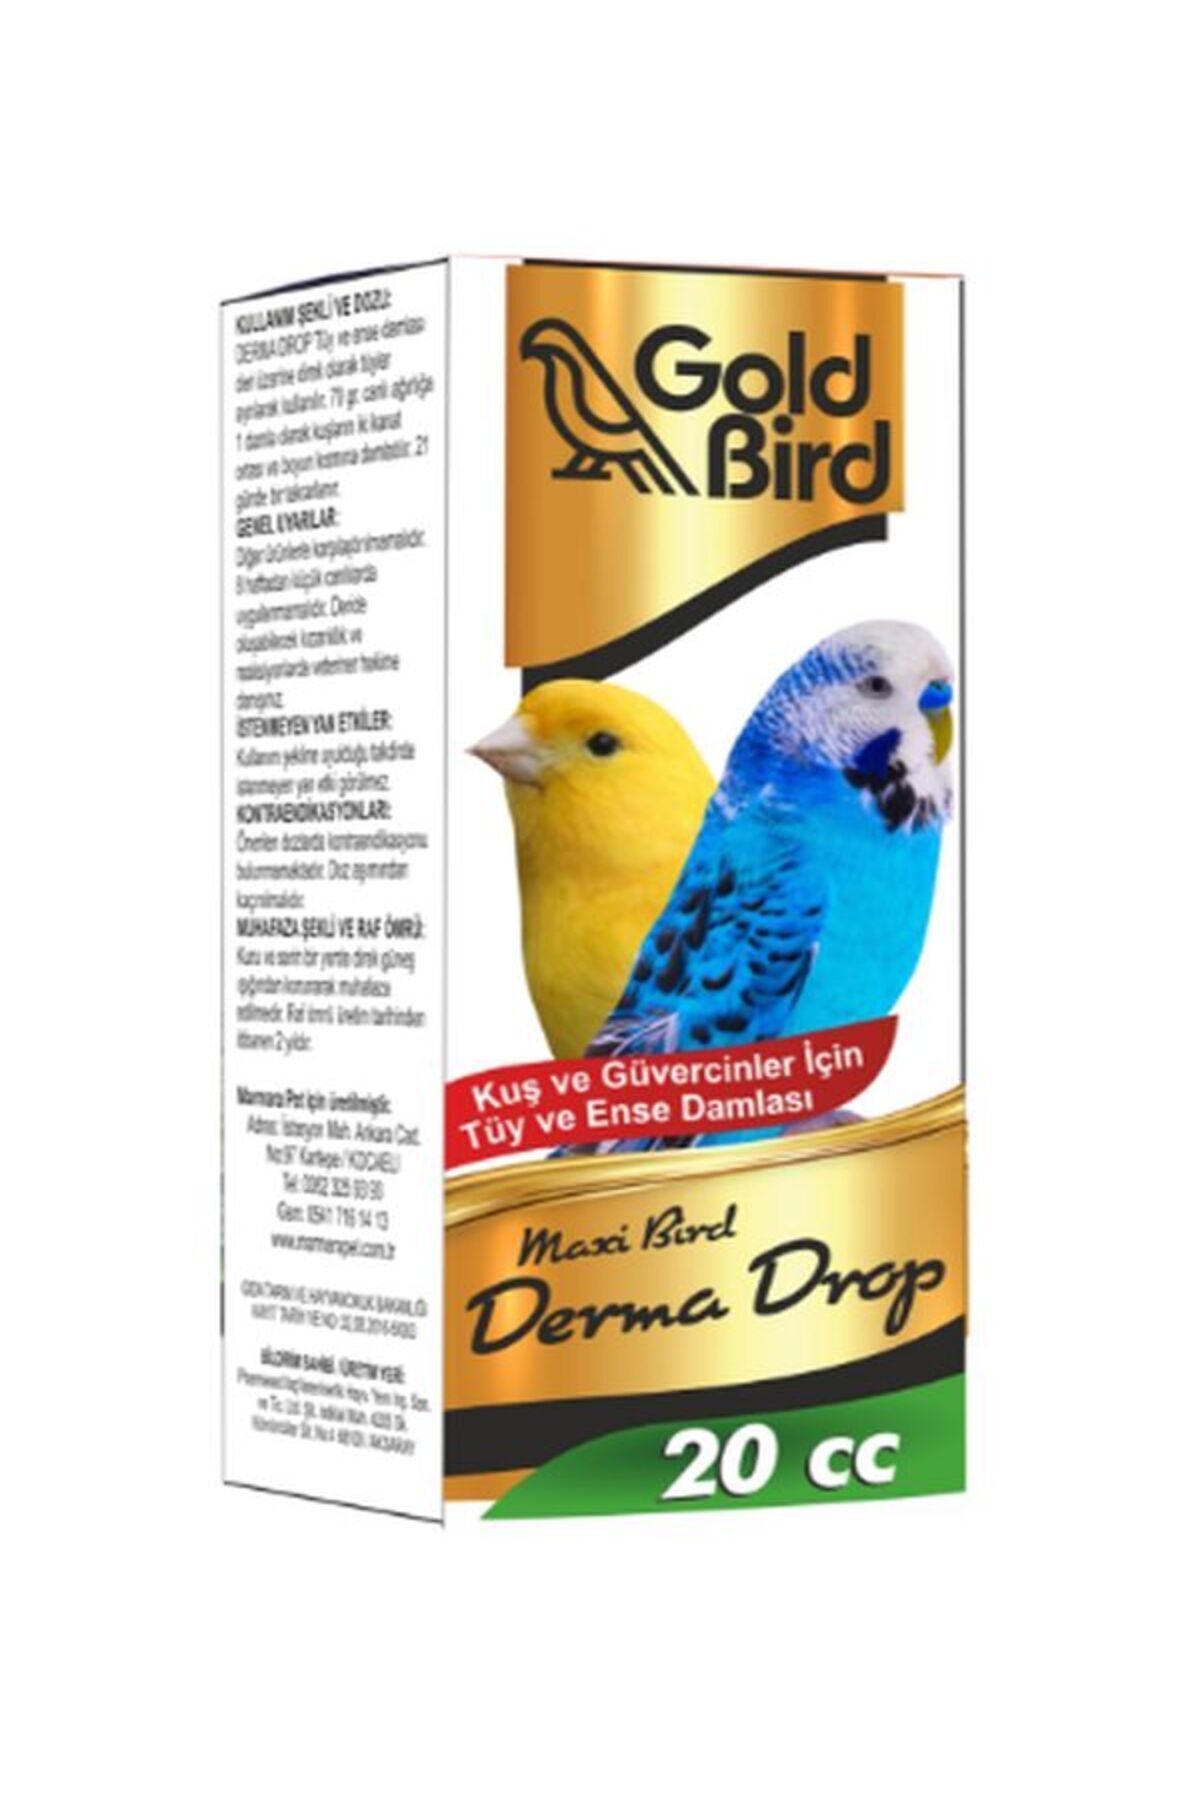 TUĞRA PET MARKET Goldbird Derma Drop 20 Cc. Bit Pire Deri Bakım Damlası